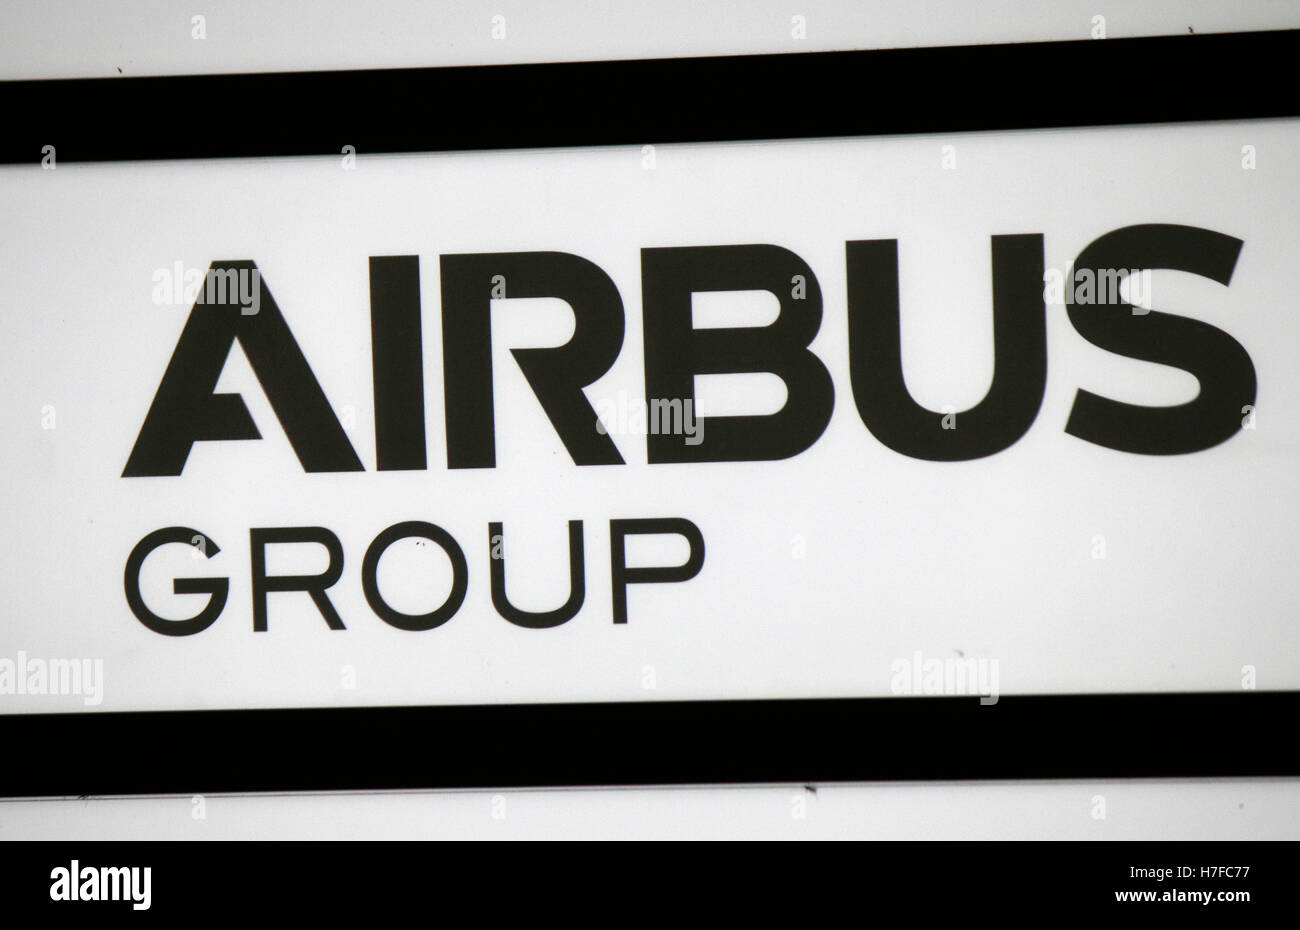 Logo das der Marke 'Grupo' de Airbus, Berlín. Foto de stock